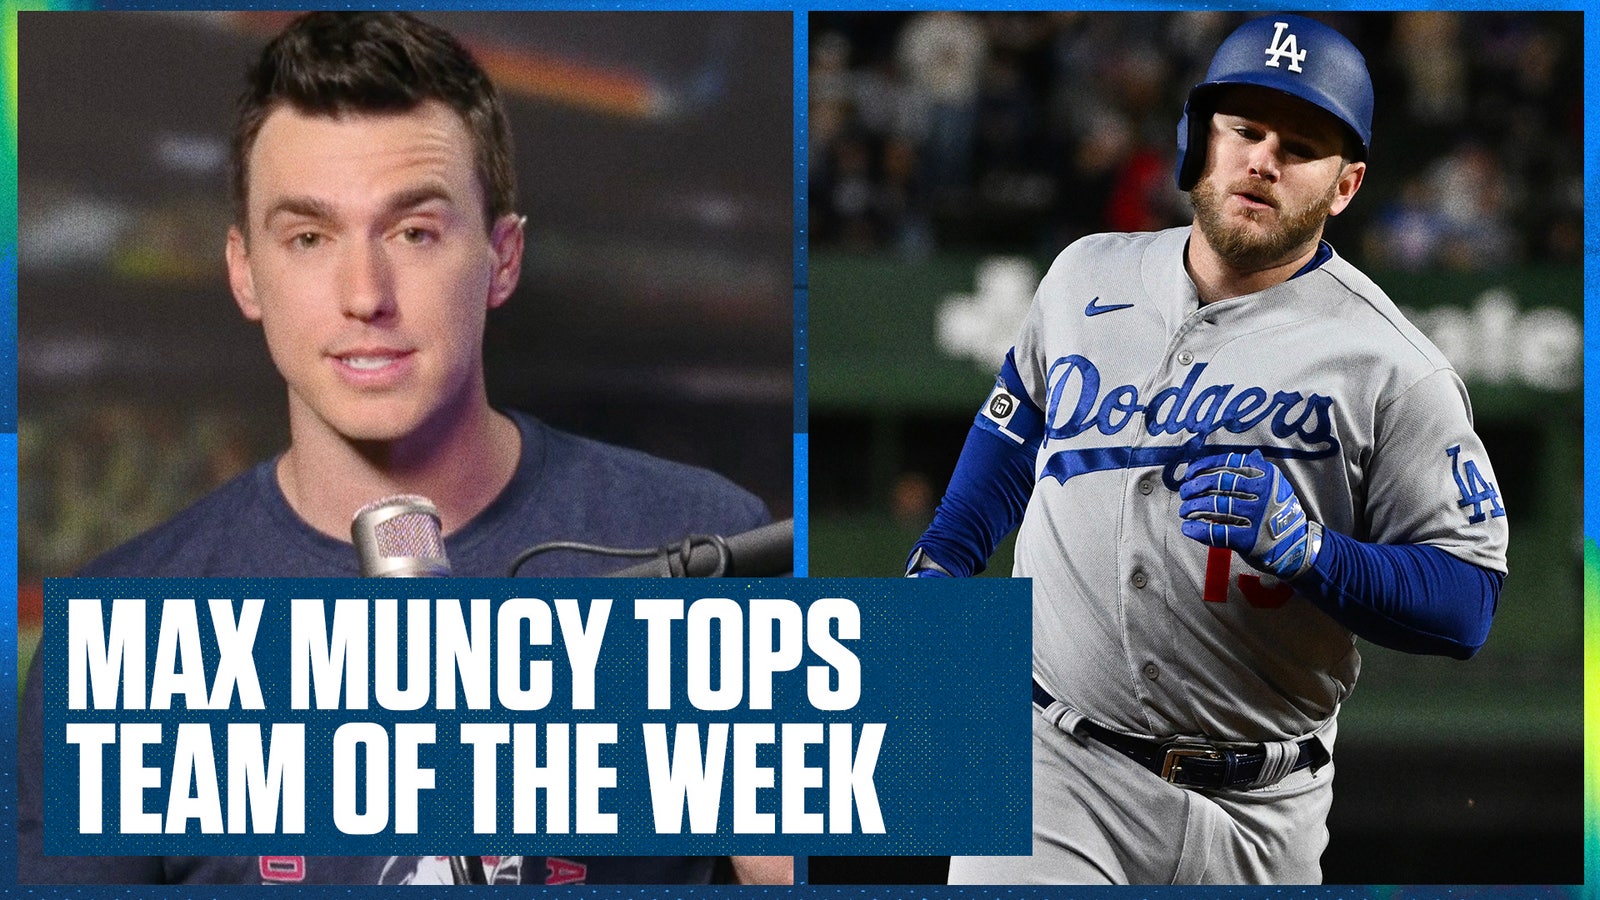 Rangers' Marcus Semien & Dodgers' Max Muncy headline Ben's Team of the Week